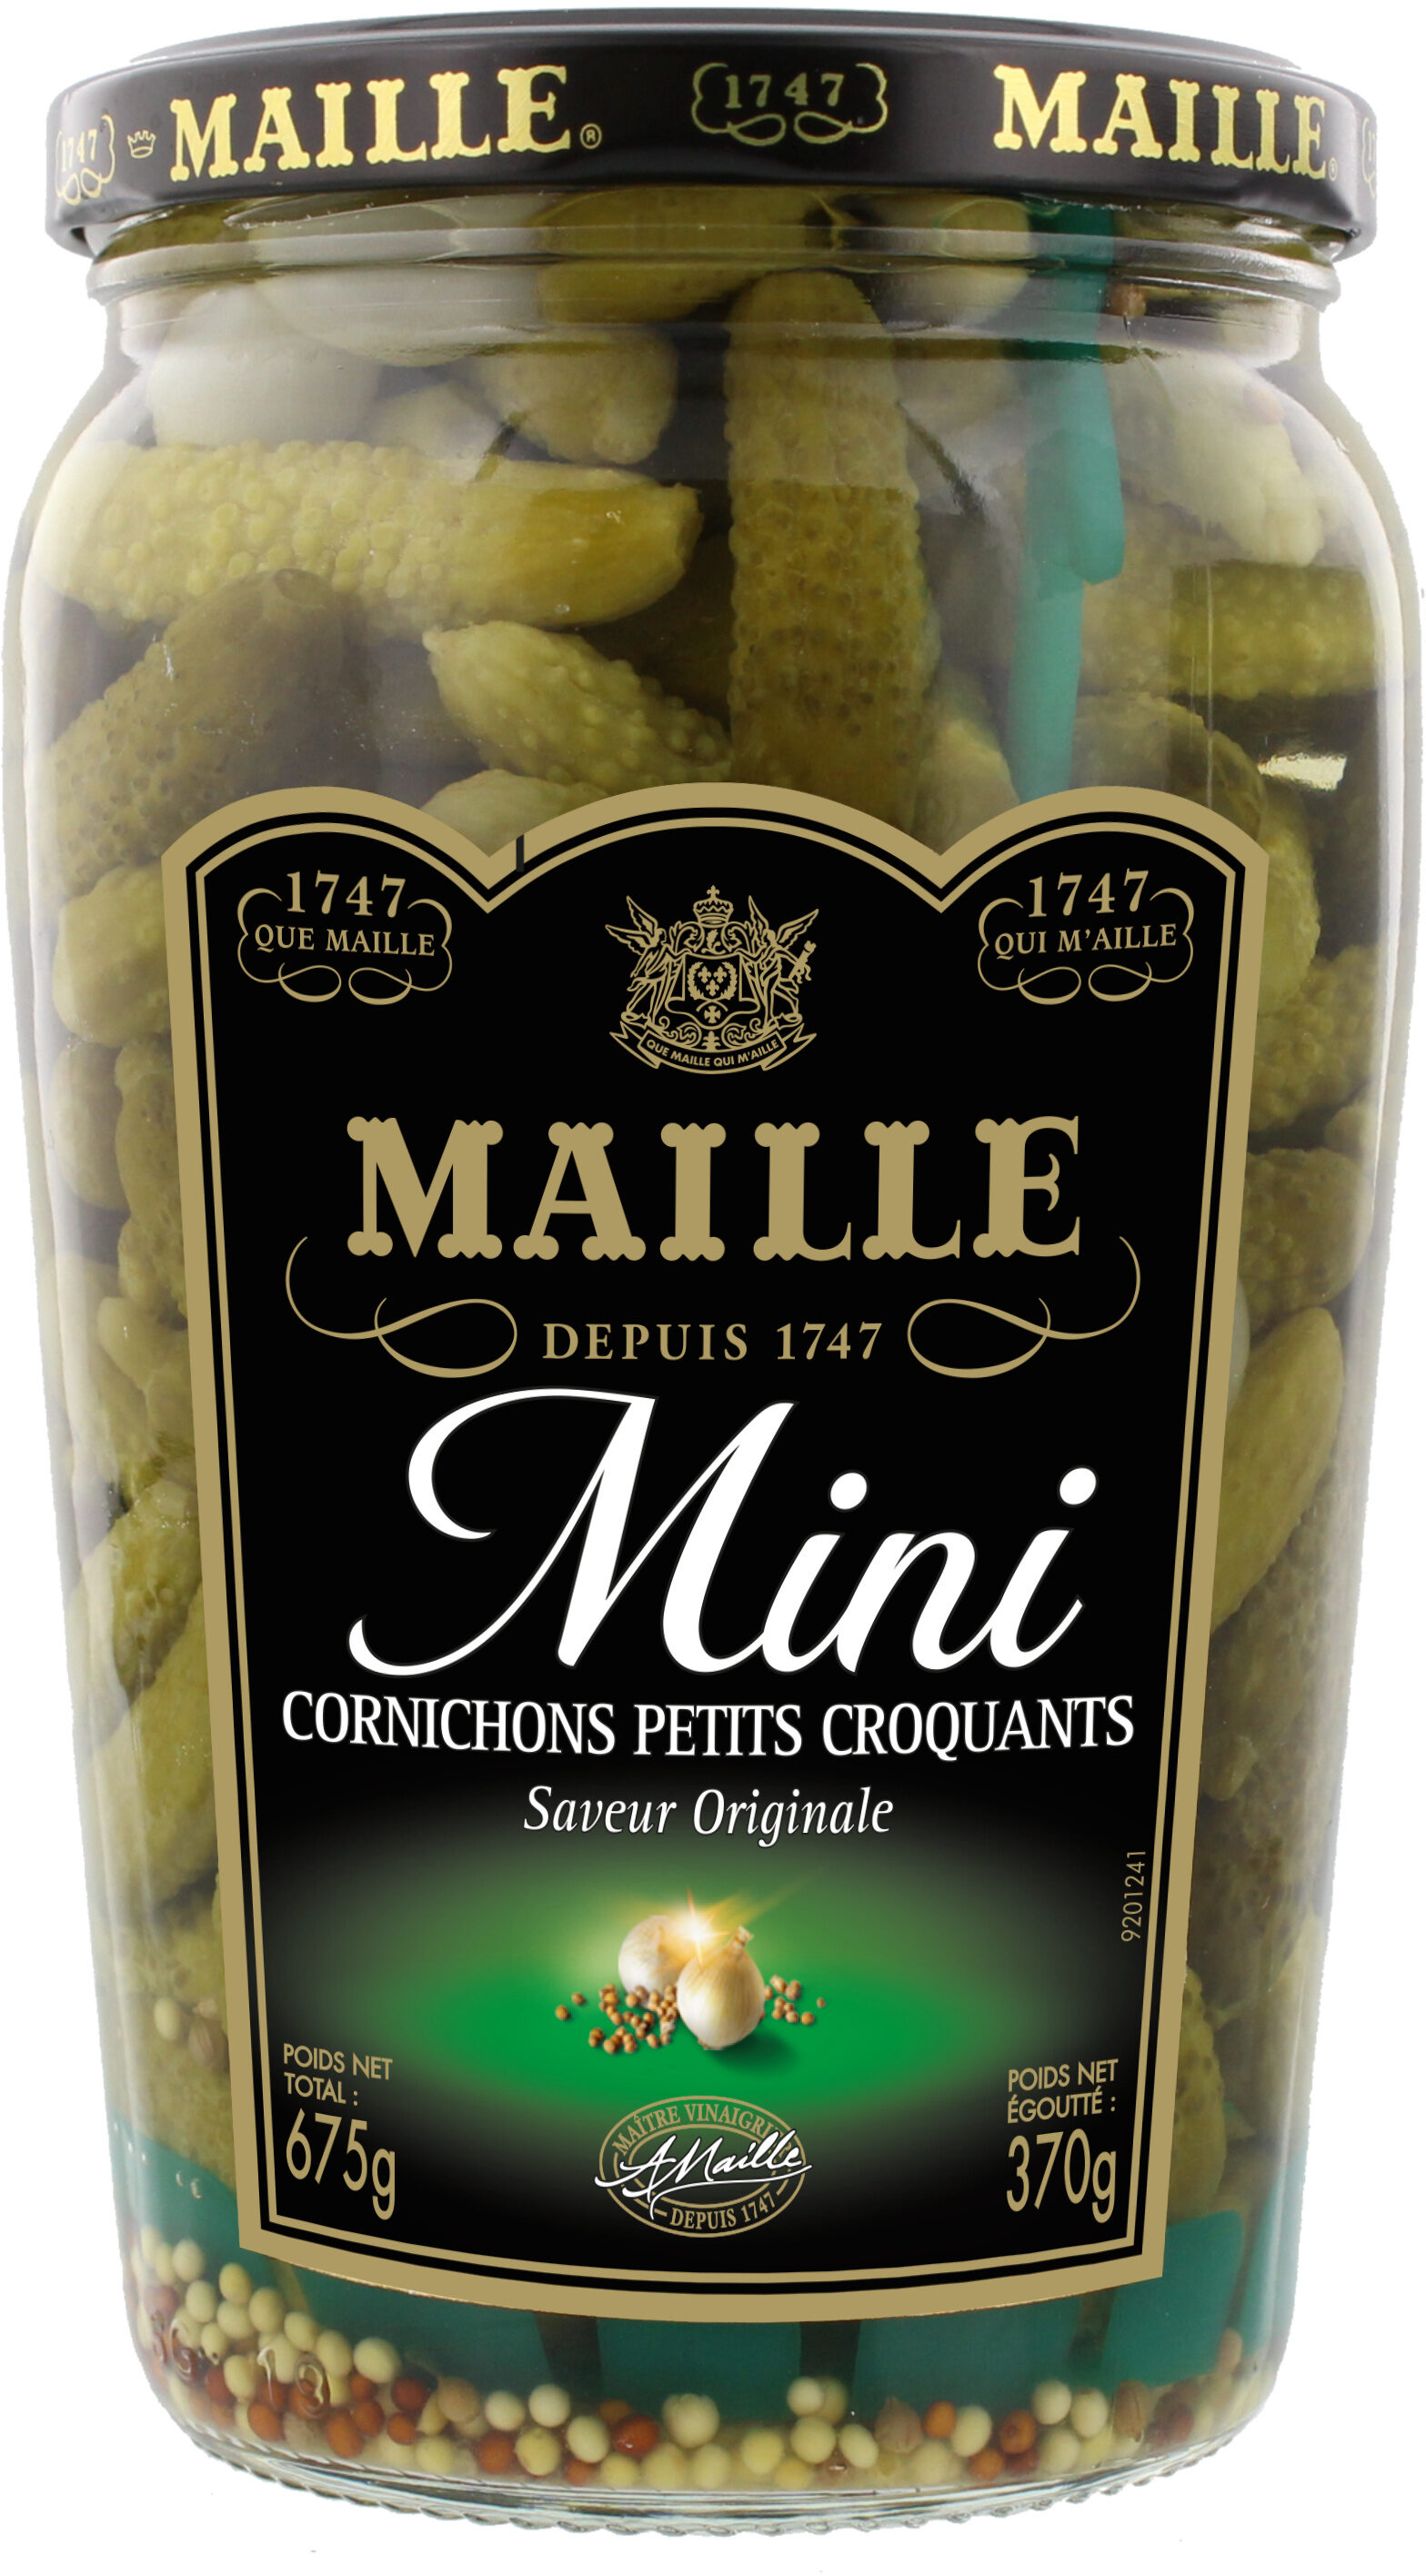 Maille Mini Cornichons Petits Croquants Bocal 370g - Produkt - fr